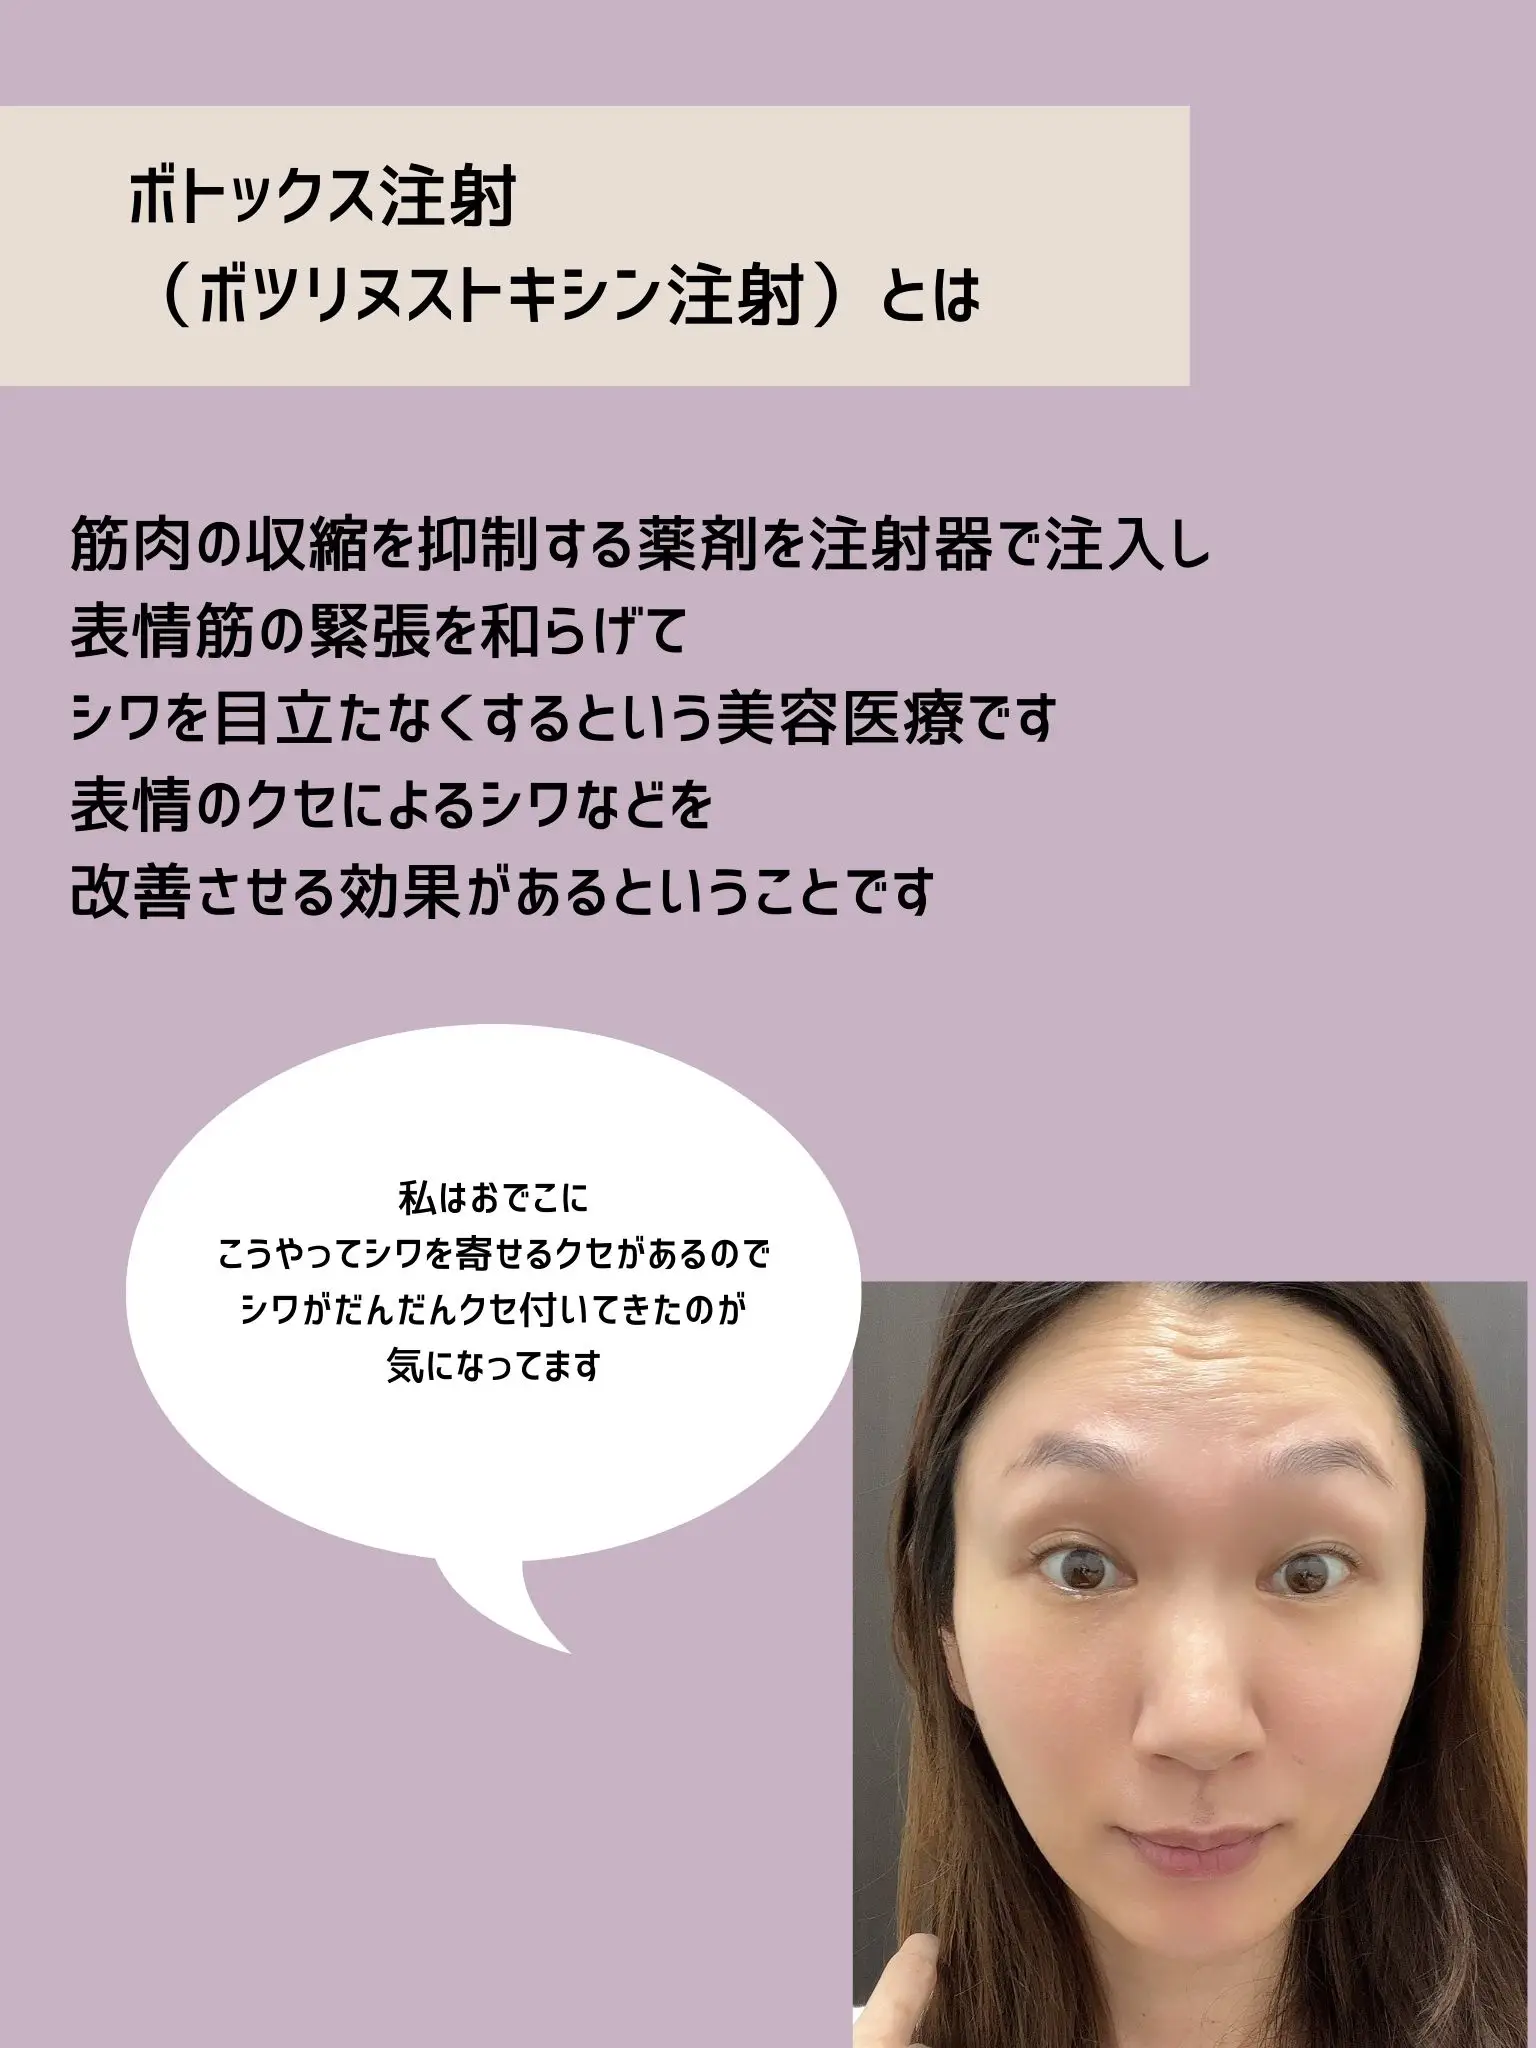 新橋武ボツリヌストキシンによる美容治療 実践講座 (PEPARS(ペパーズ))